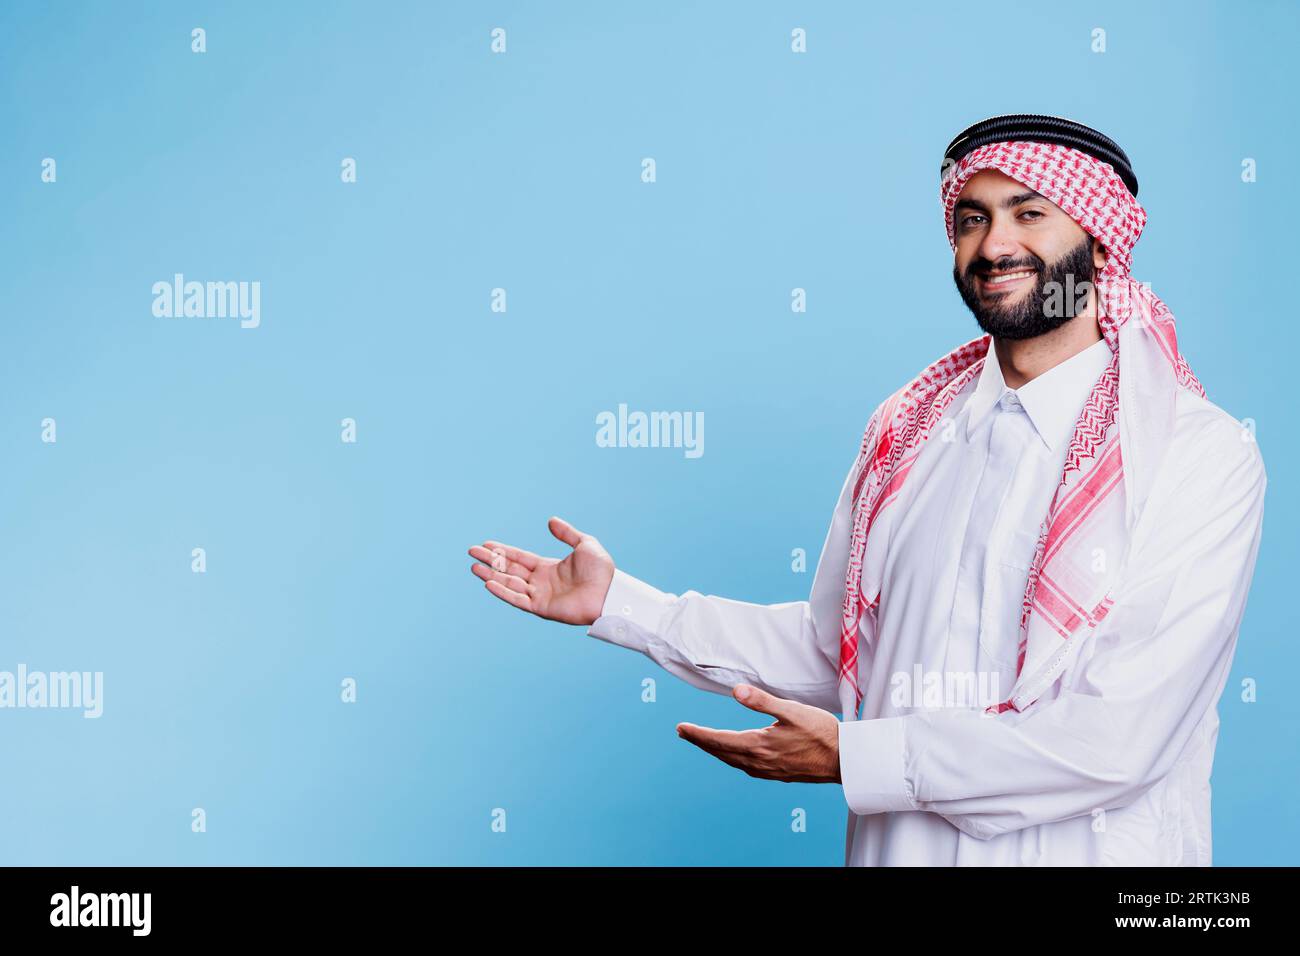 Muslimischer Mann mit traditionellem Gewand und Kopftuch, der sich mit den Händen zur Seite bewegt, während er für einen Studioschuss posiert. Arabischer Vertriebsmitarbeiter, der für Produkte wirbt, während er zeigt, dass er Platz mit Waffen kopiert Stockfoto